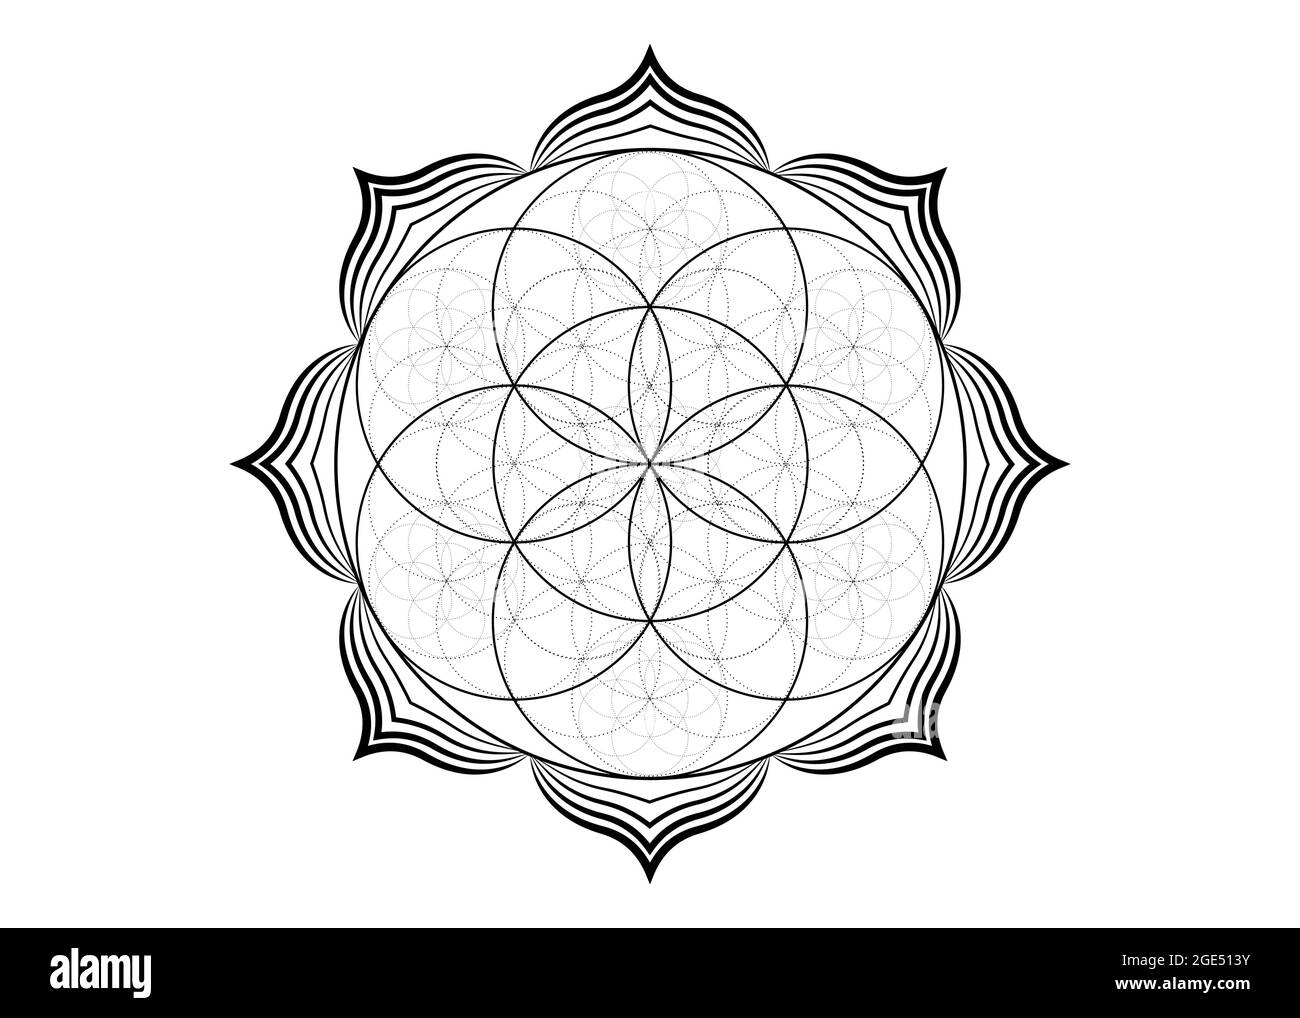 Seed Blume des Lebens Lotus-Symbol, yantra Mandala heilige Geometrie,  Tattoo Symbol der Harmonie und Balance. Mystischer Talisman, schwarzer  Linienvektor isoliert Stock-Vektorgrafik - Alamy